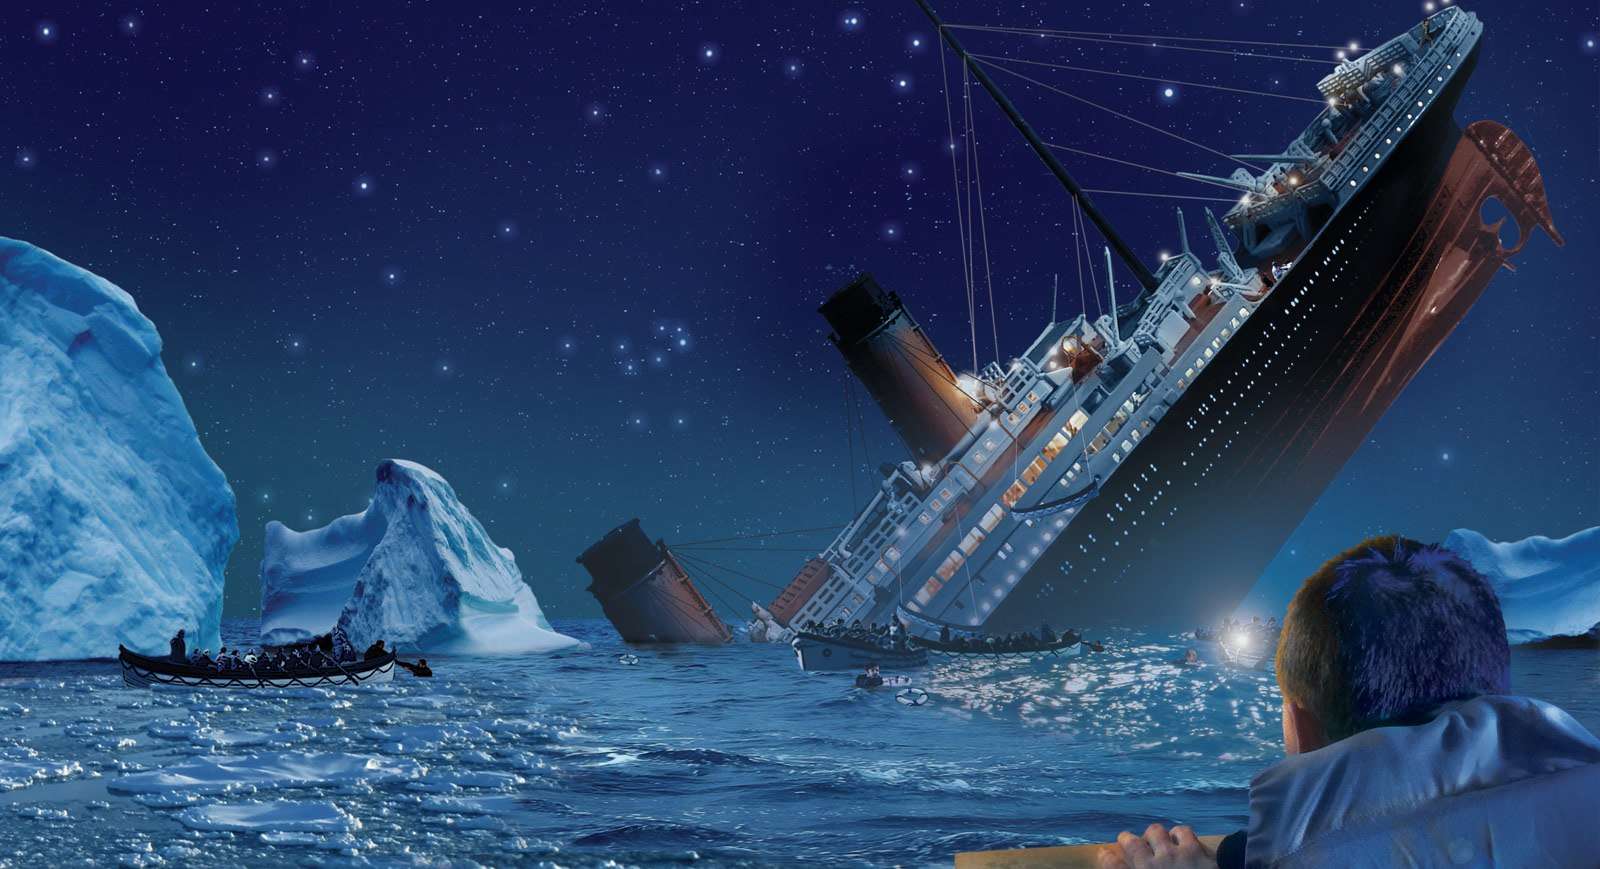 Titanic sinkt Puzzle